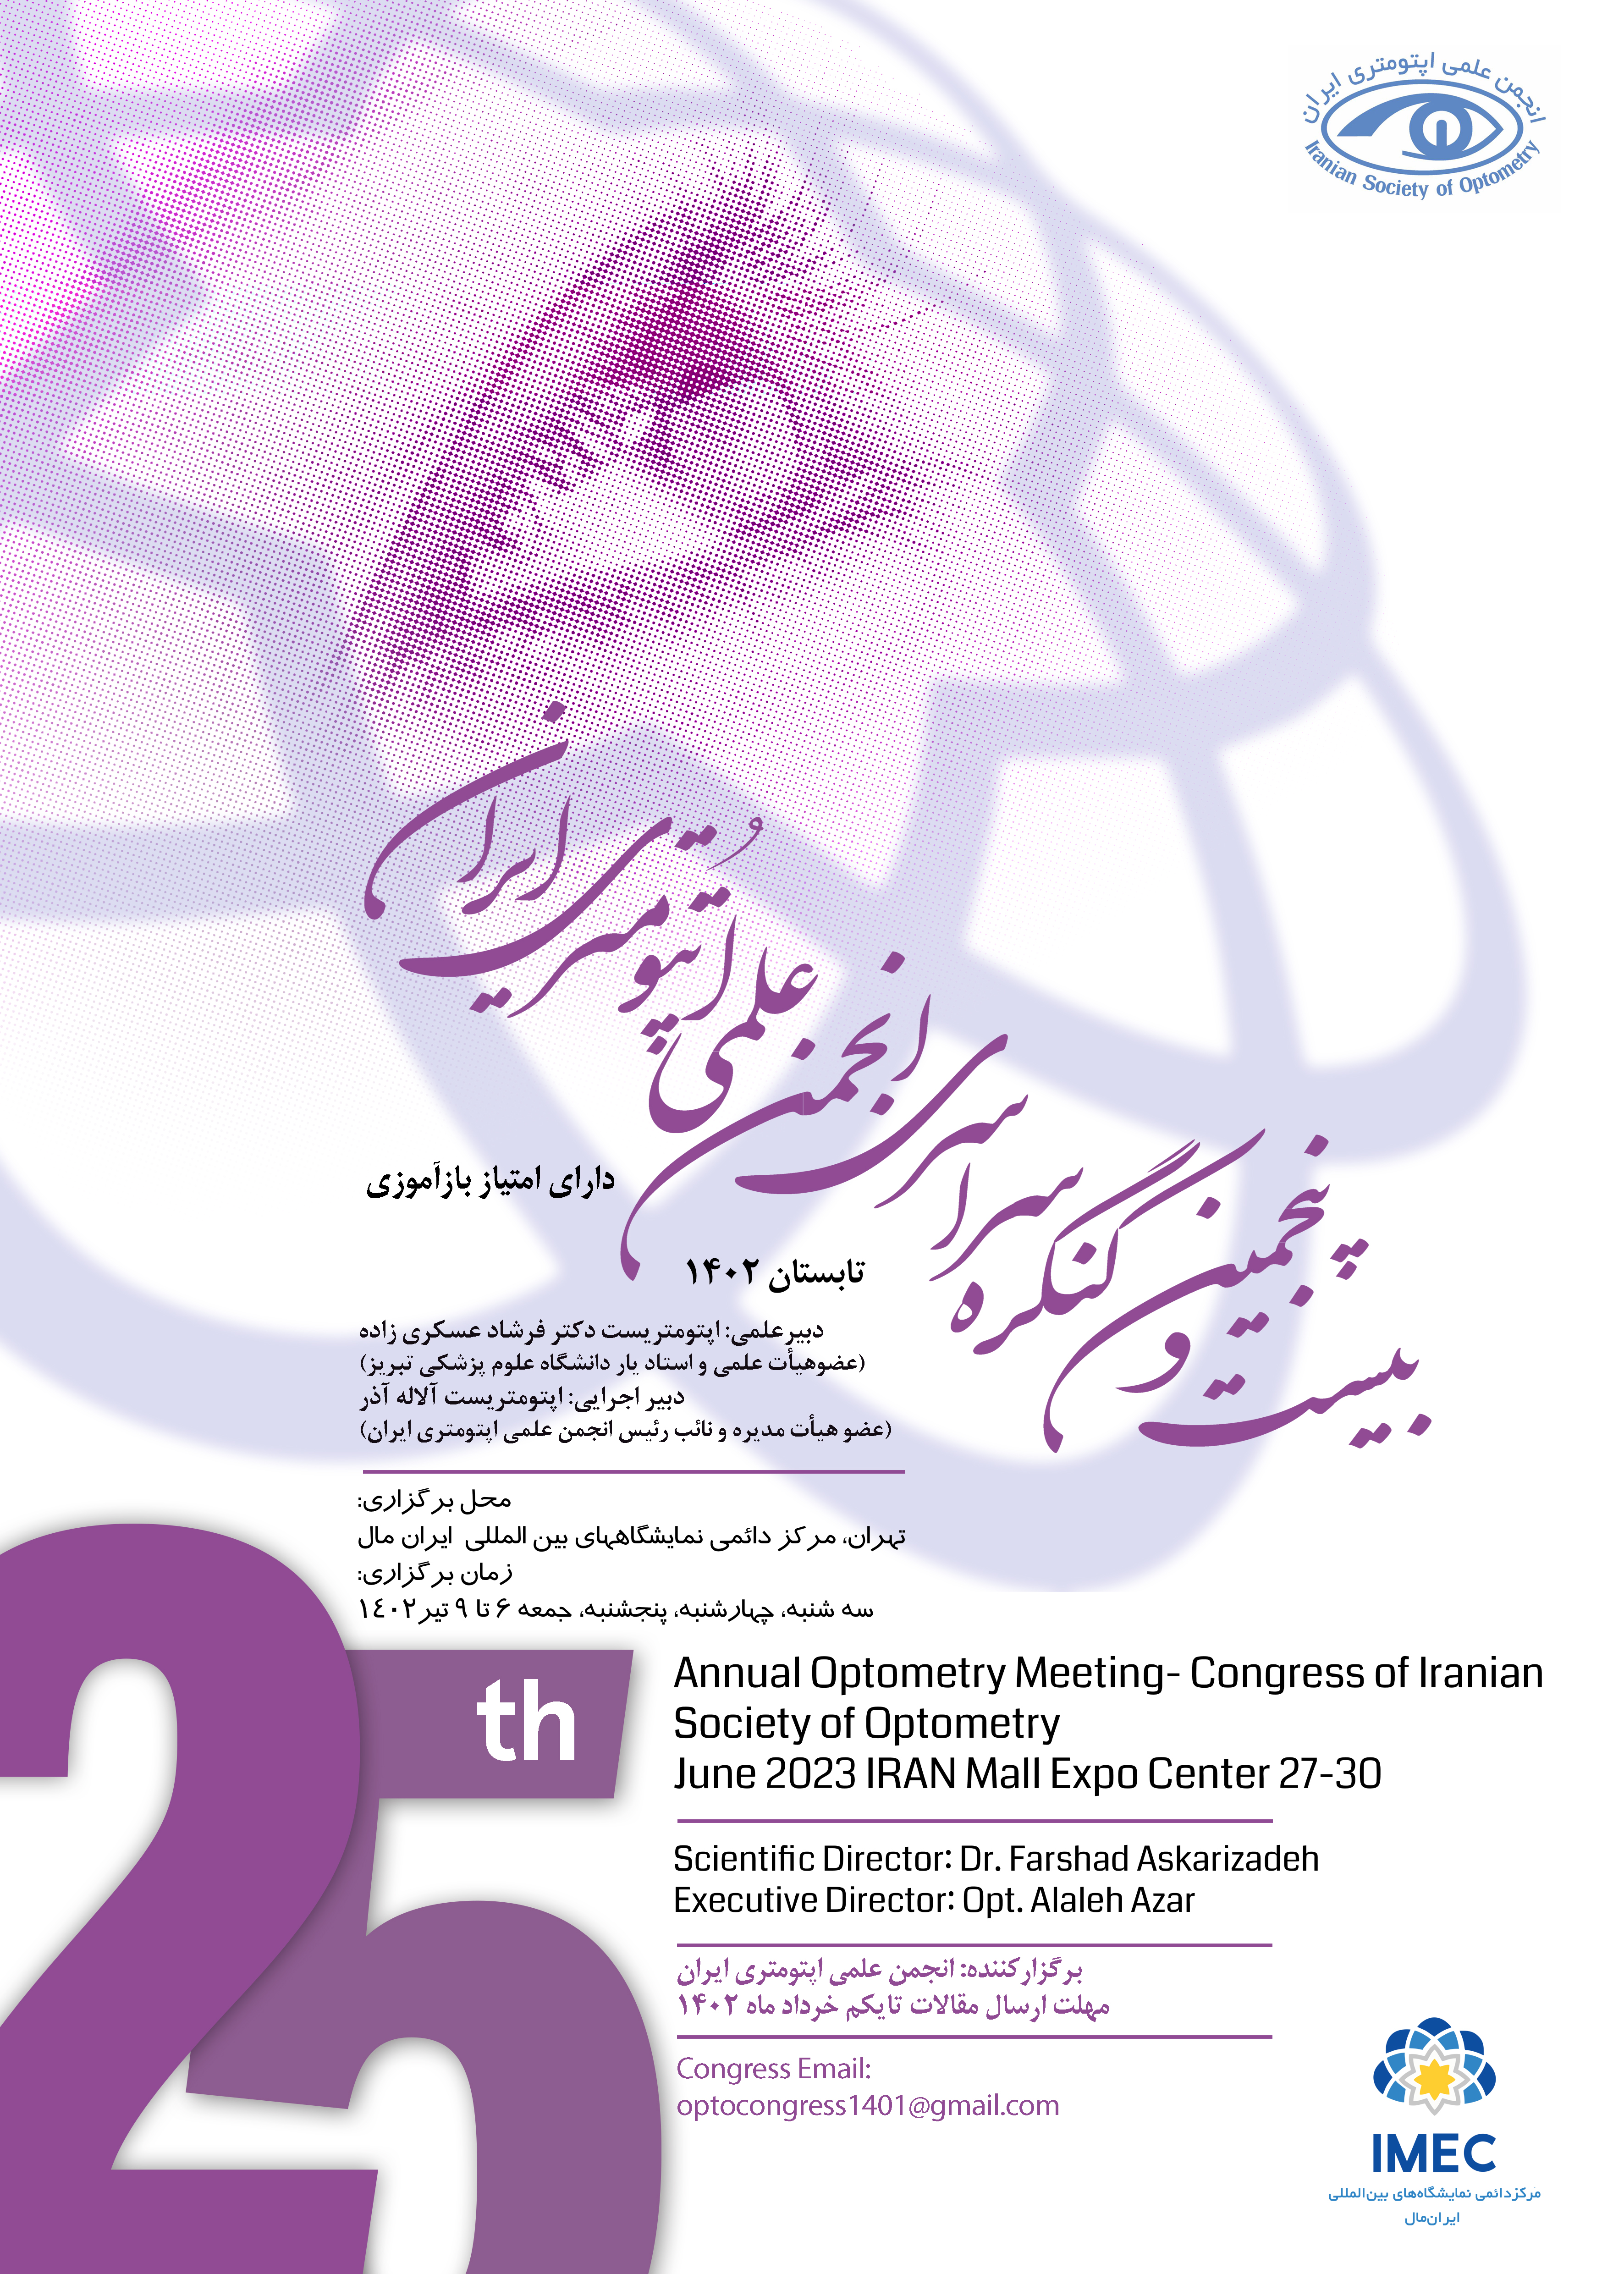 بیست و پنجمین کنگره سراسری انجمن علمی اپتومتری ایران